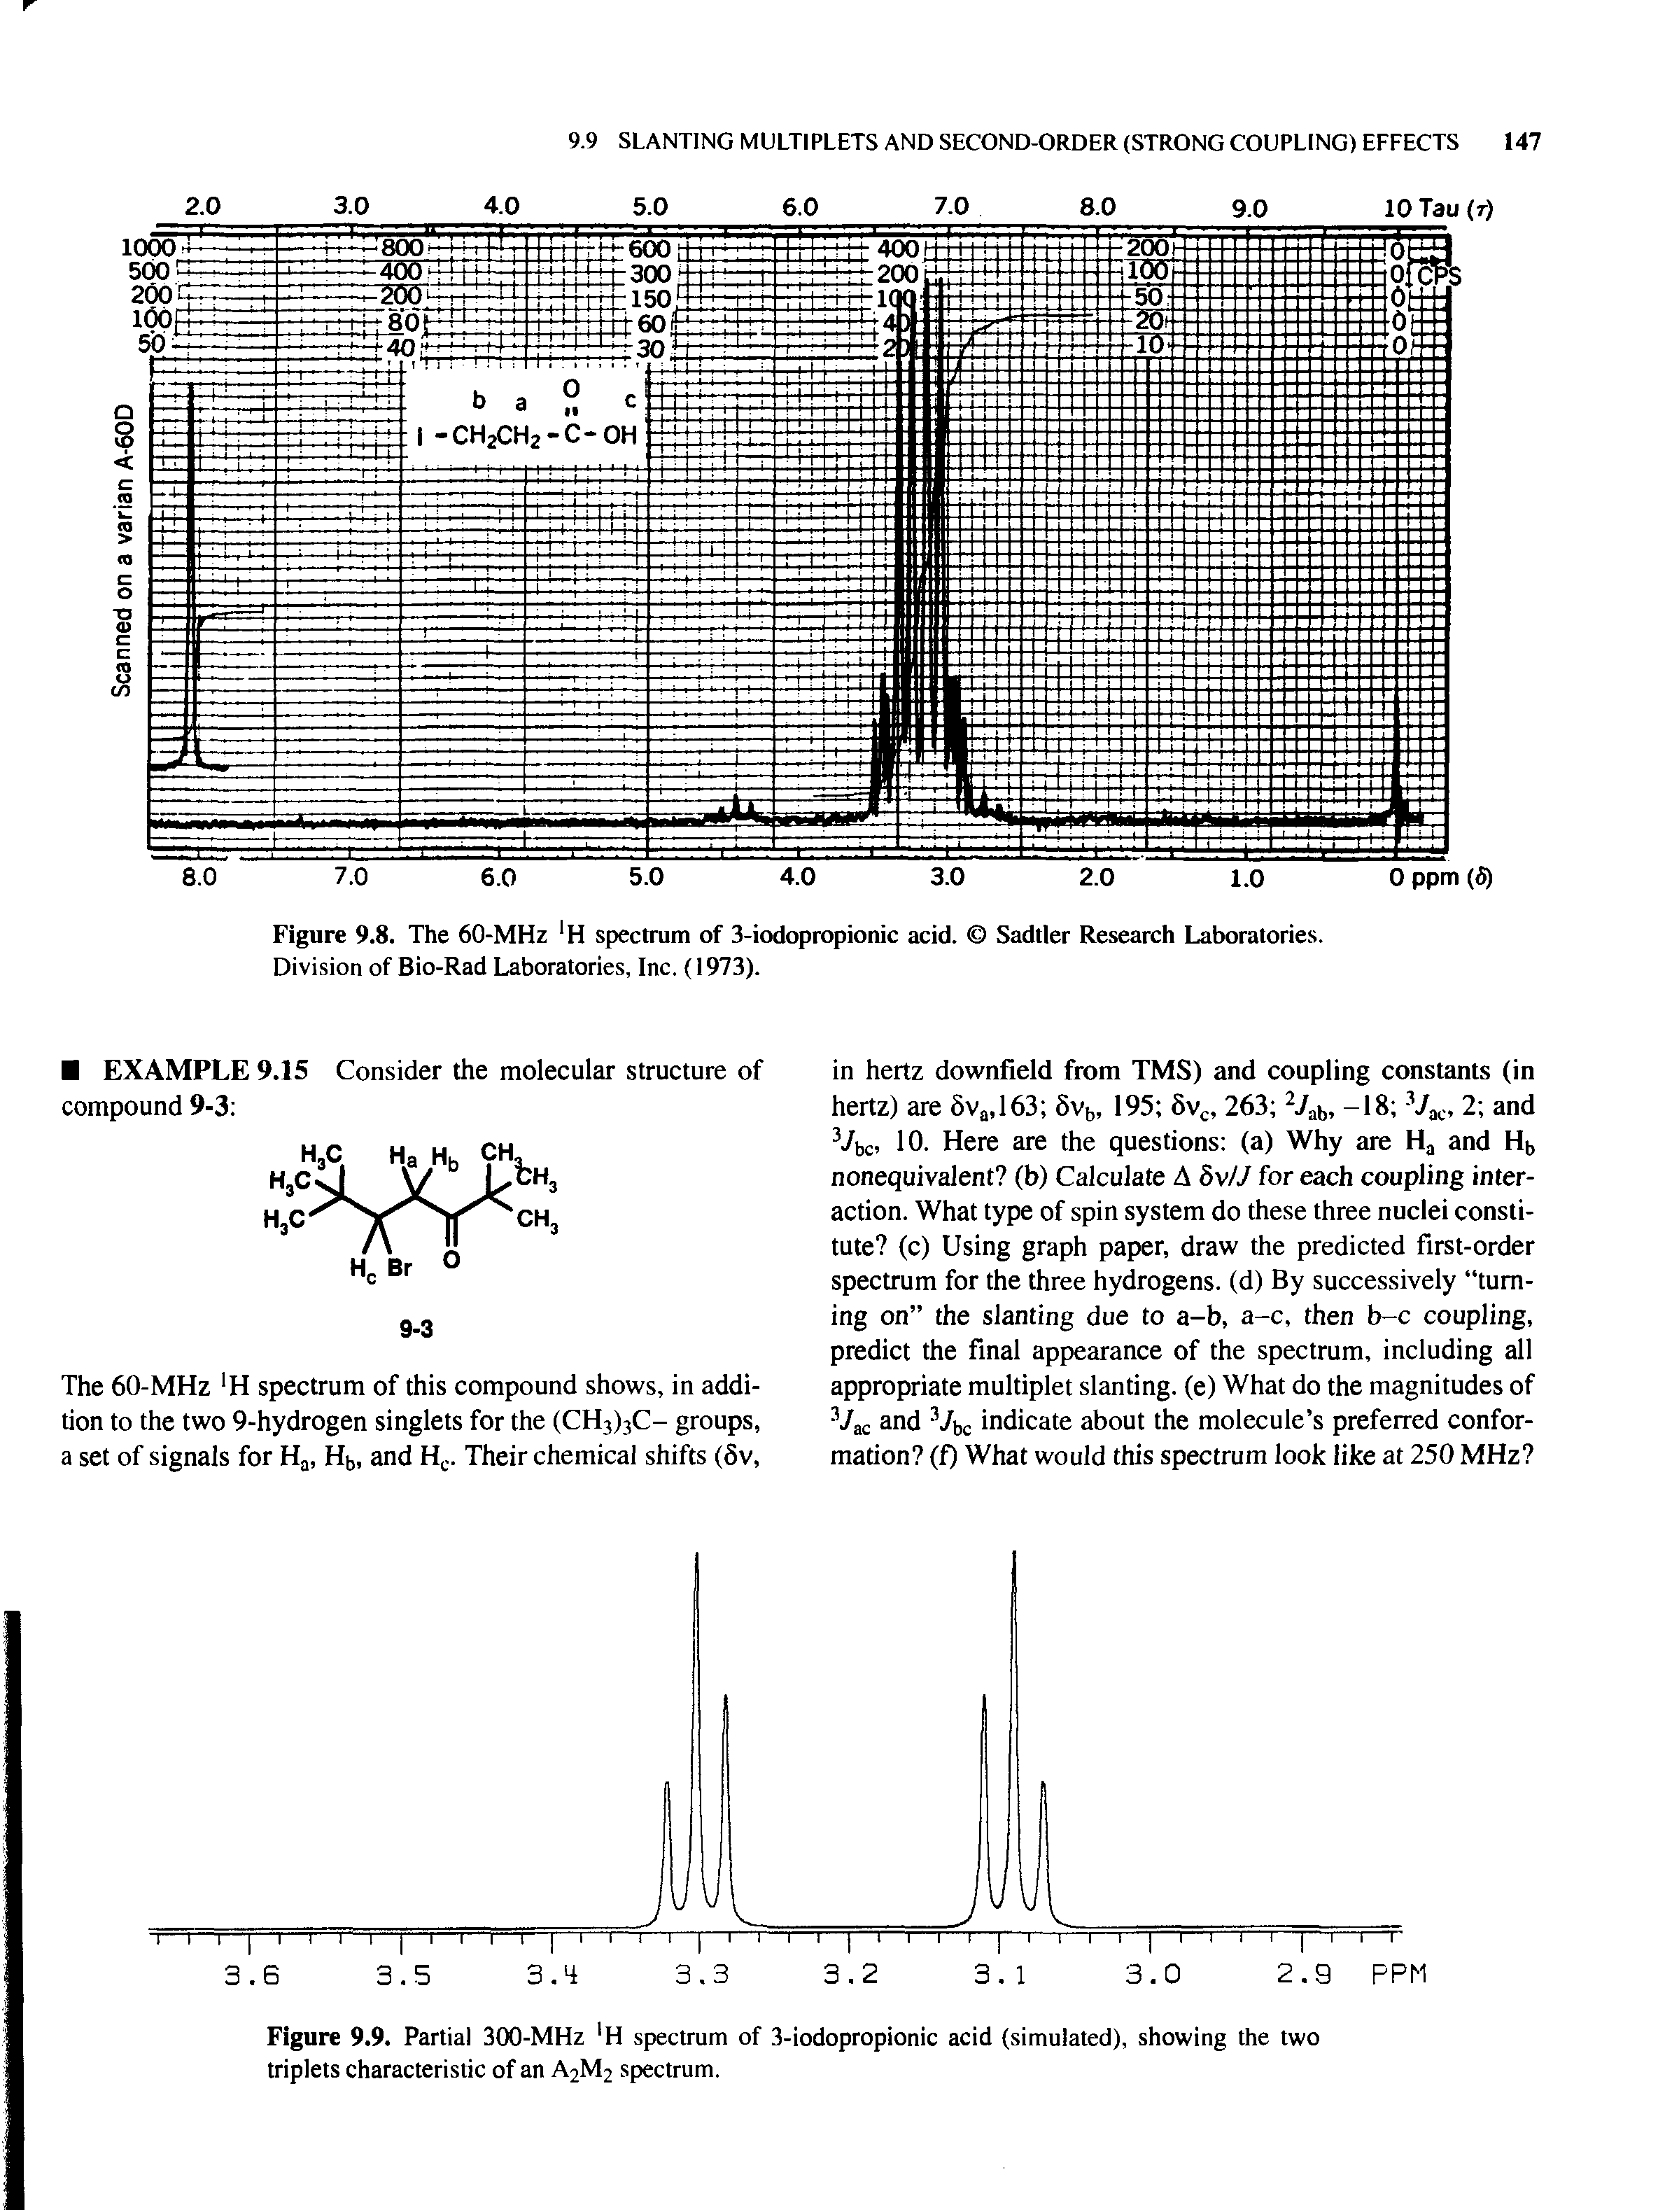 Figure 9.8. The 60-MHz H spectrum of 3-iodopropionic acid. Sadtler Research Laboratories. Division of Bio-Rad Laboratories, Inc. (1973).